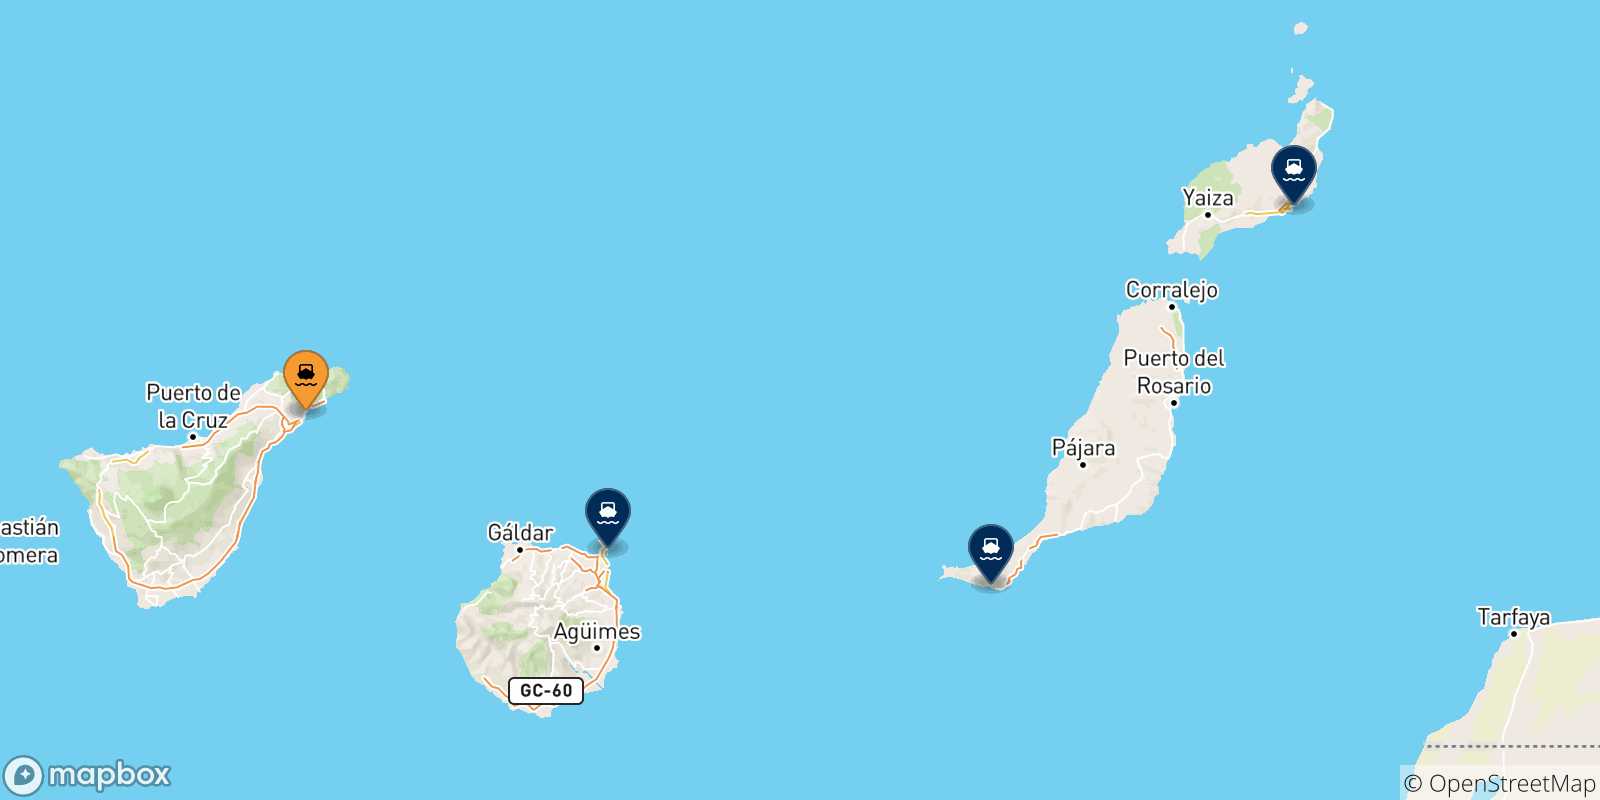 Mappa delle possibili rotte tra Santa Cruz De Tenerife e le Isole Canarie